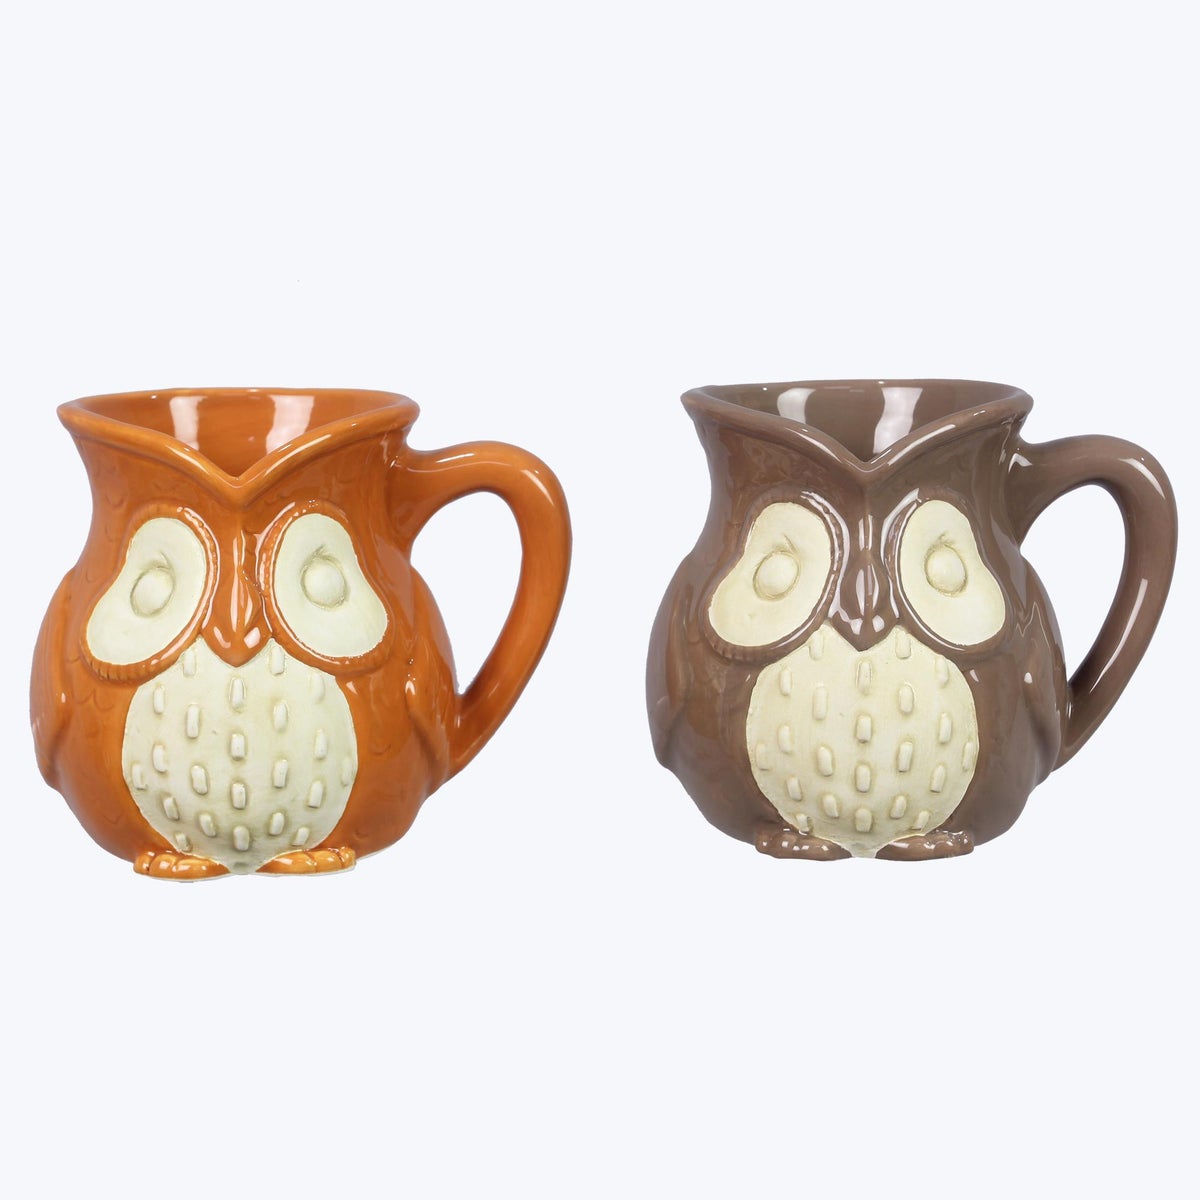 Ceramic Cozy Woodland Owl Mugs, 2 Ast